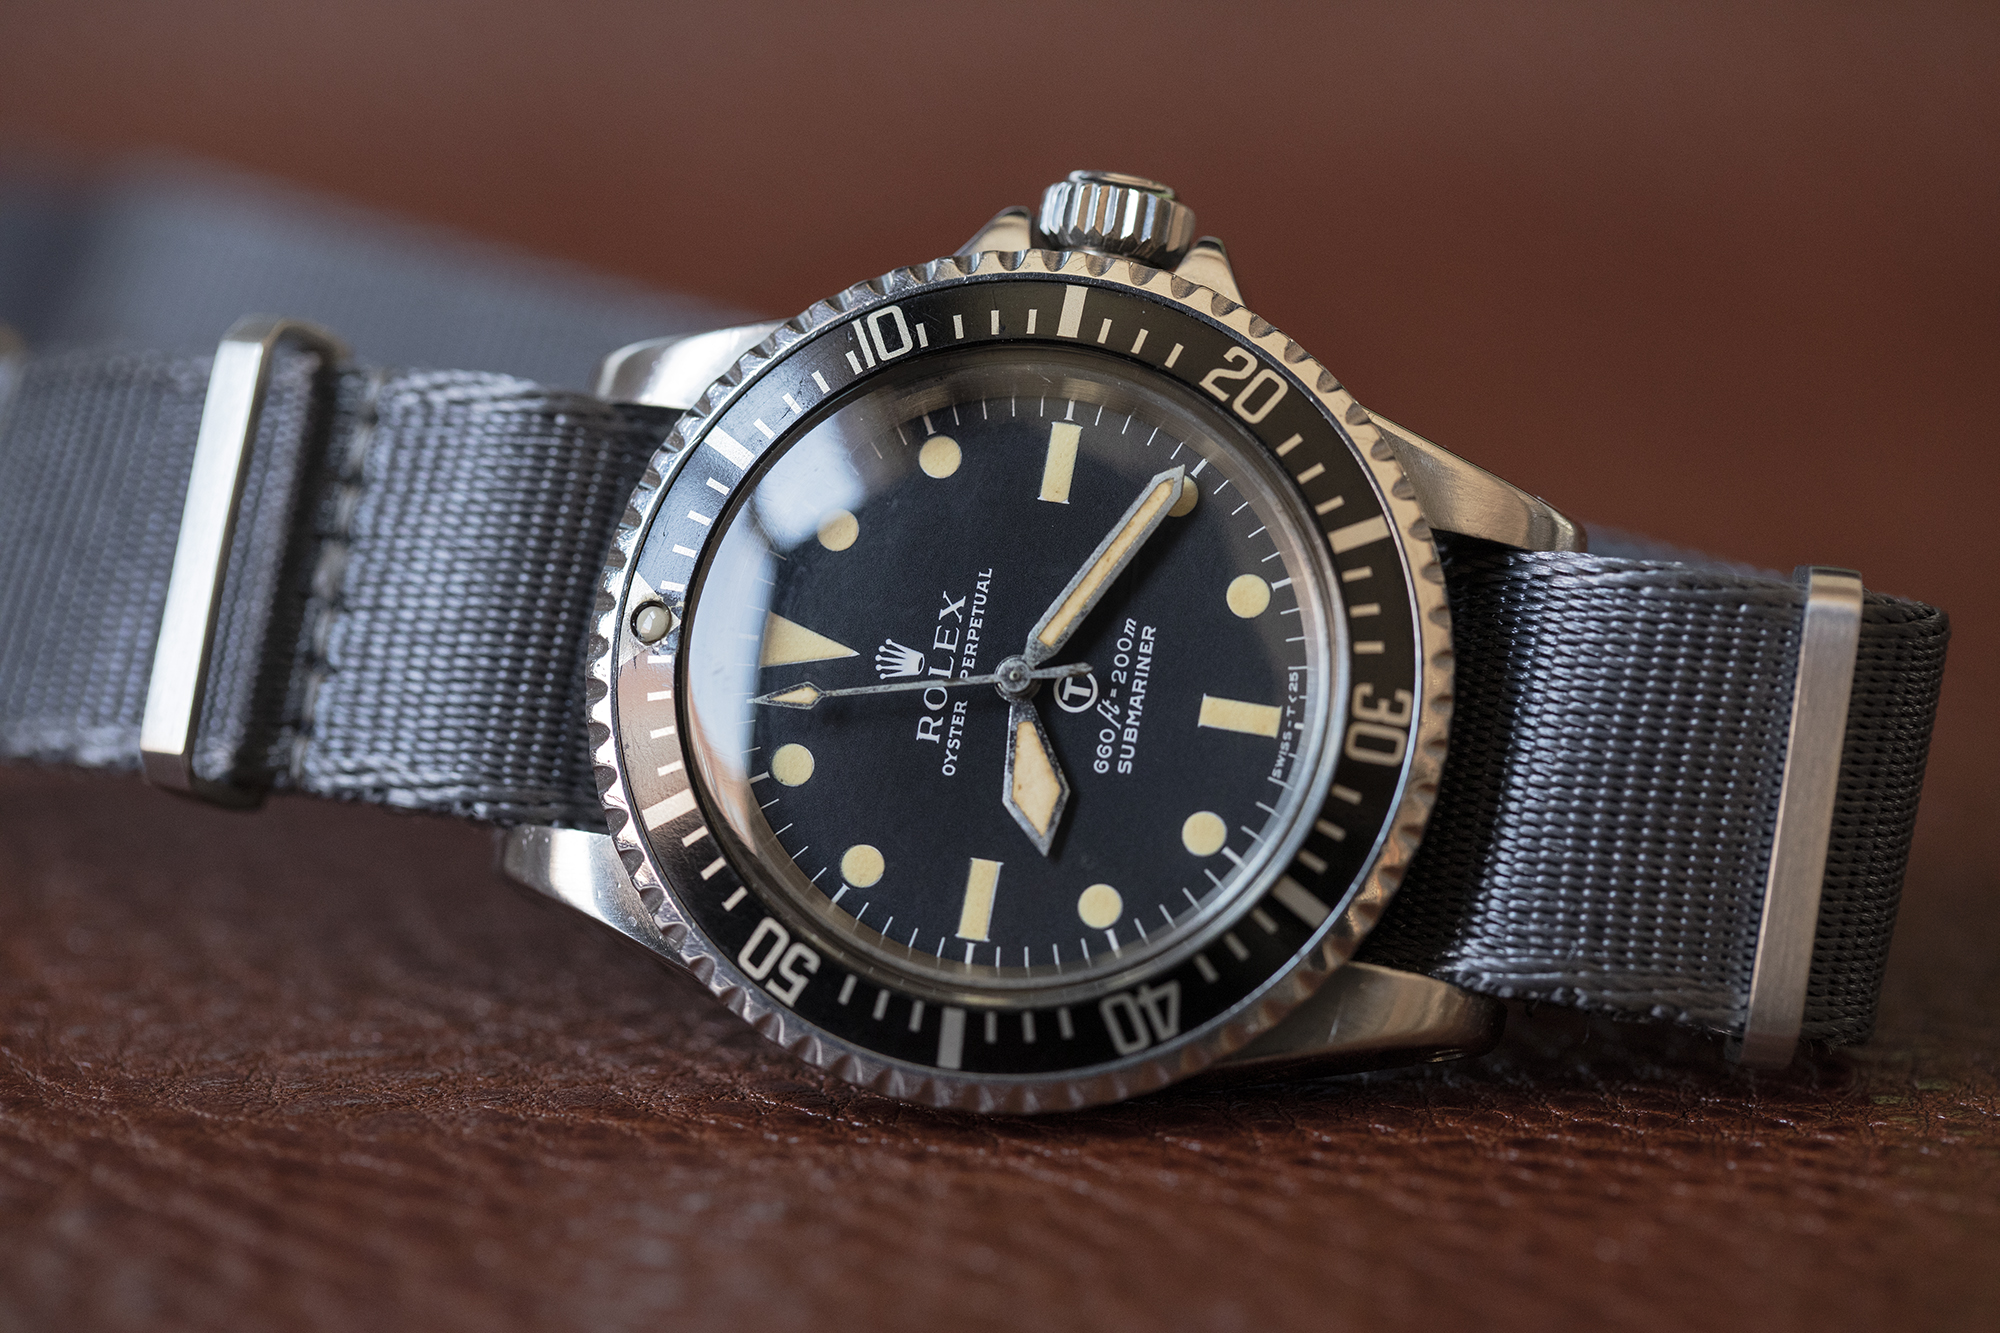 rolex submariner hodinkee